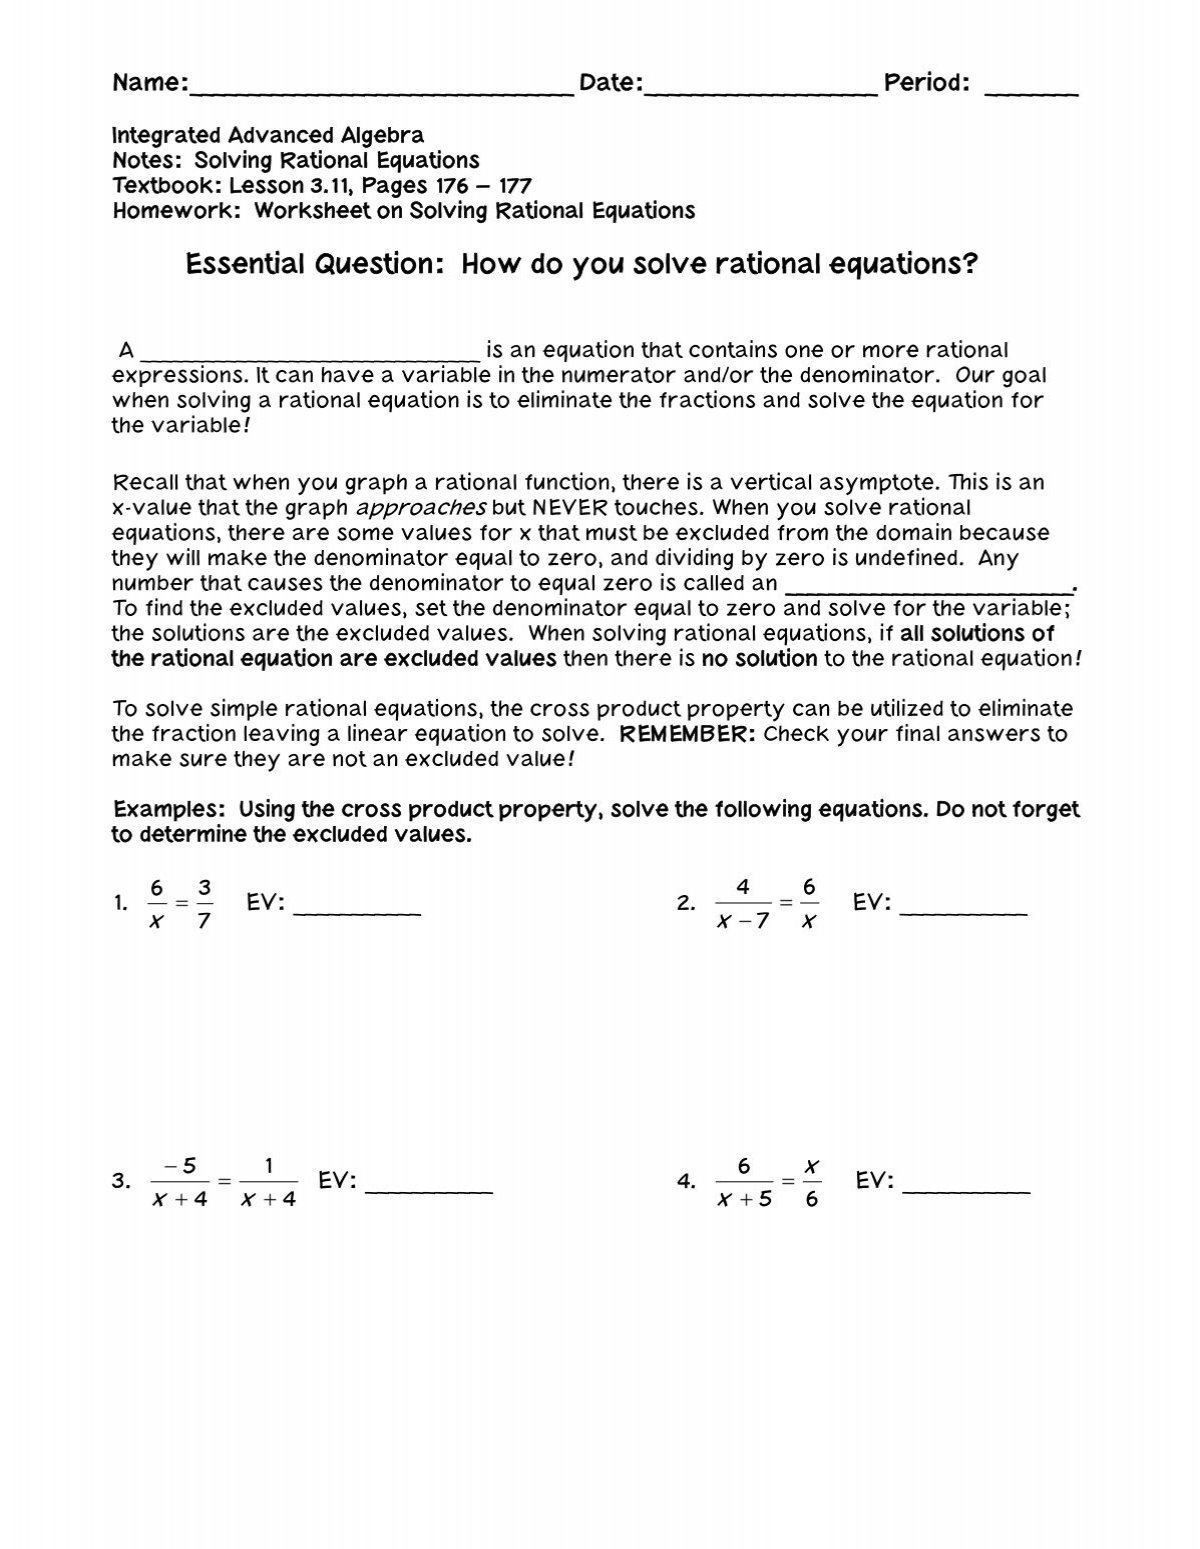 rationals-solving-equations-fulton-county-schools